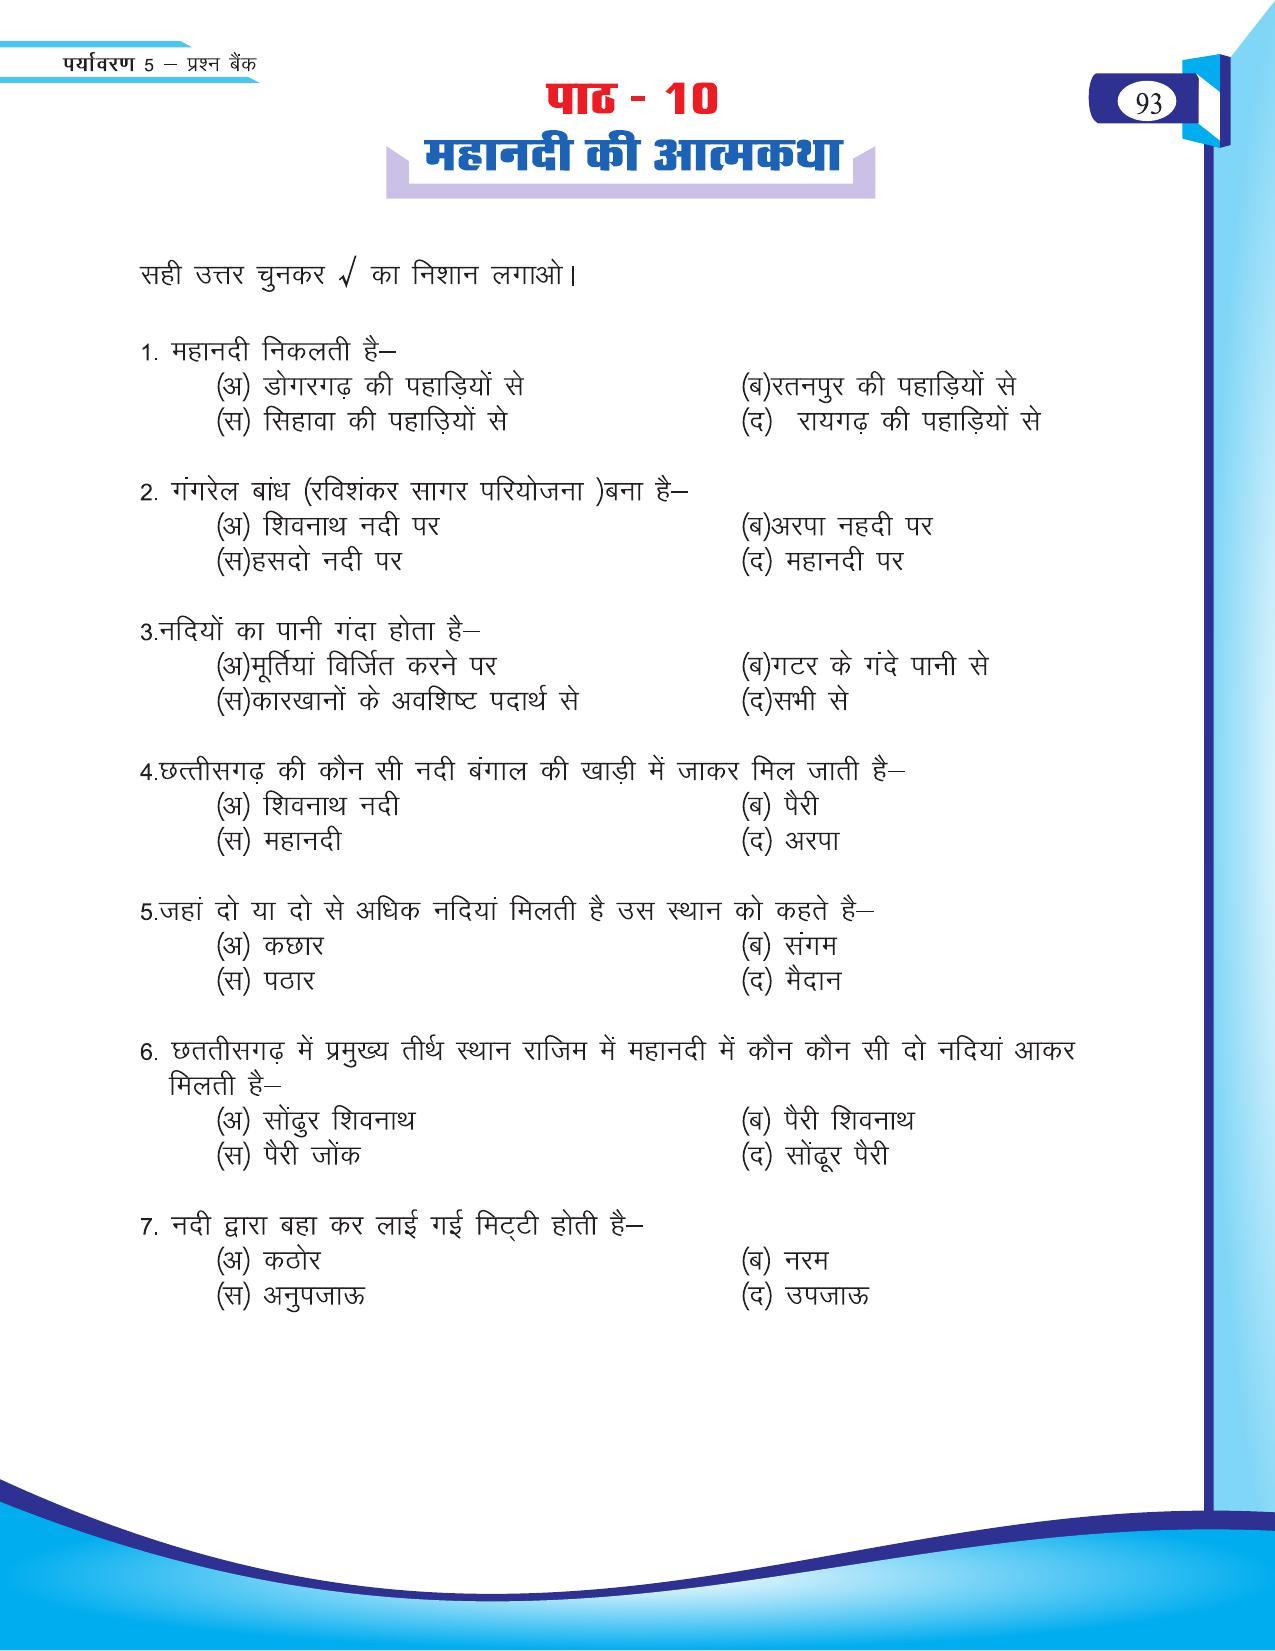 Chhattisgarh Board Class 5 EVS Question Bank 2015-16 - Page 19